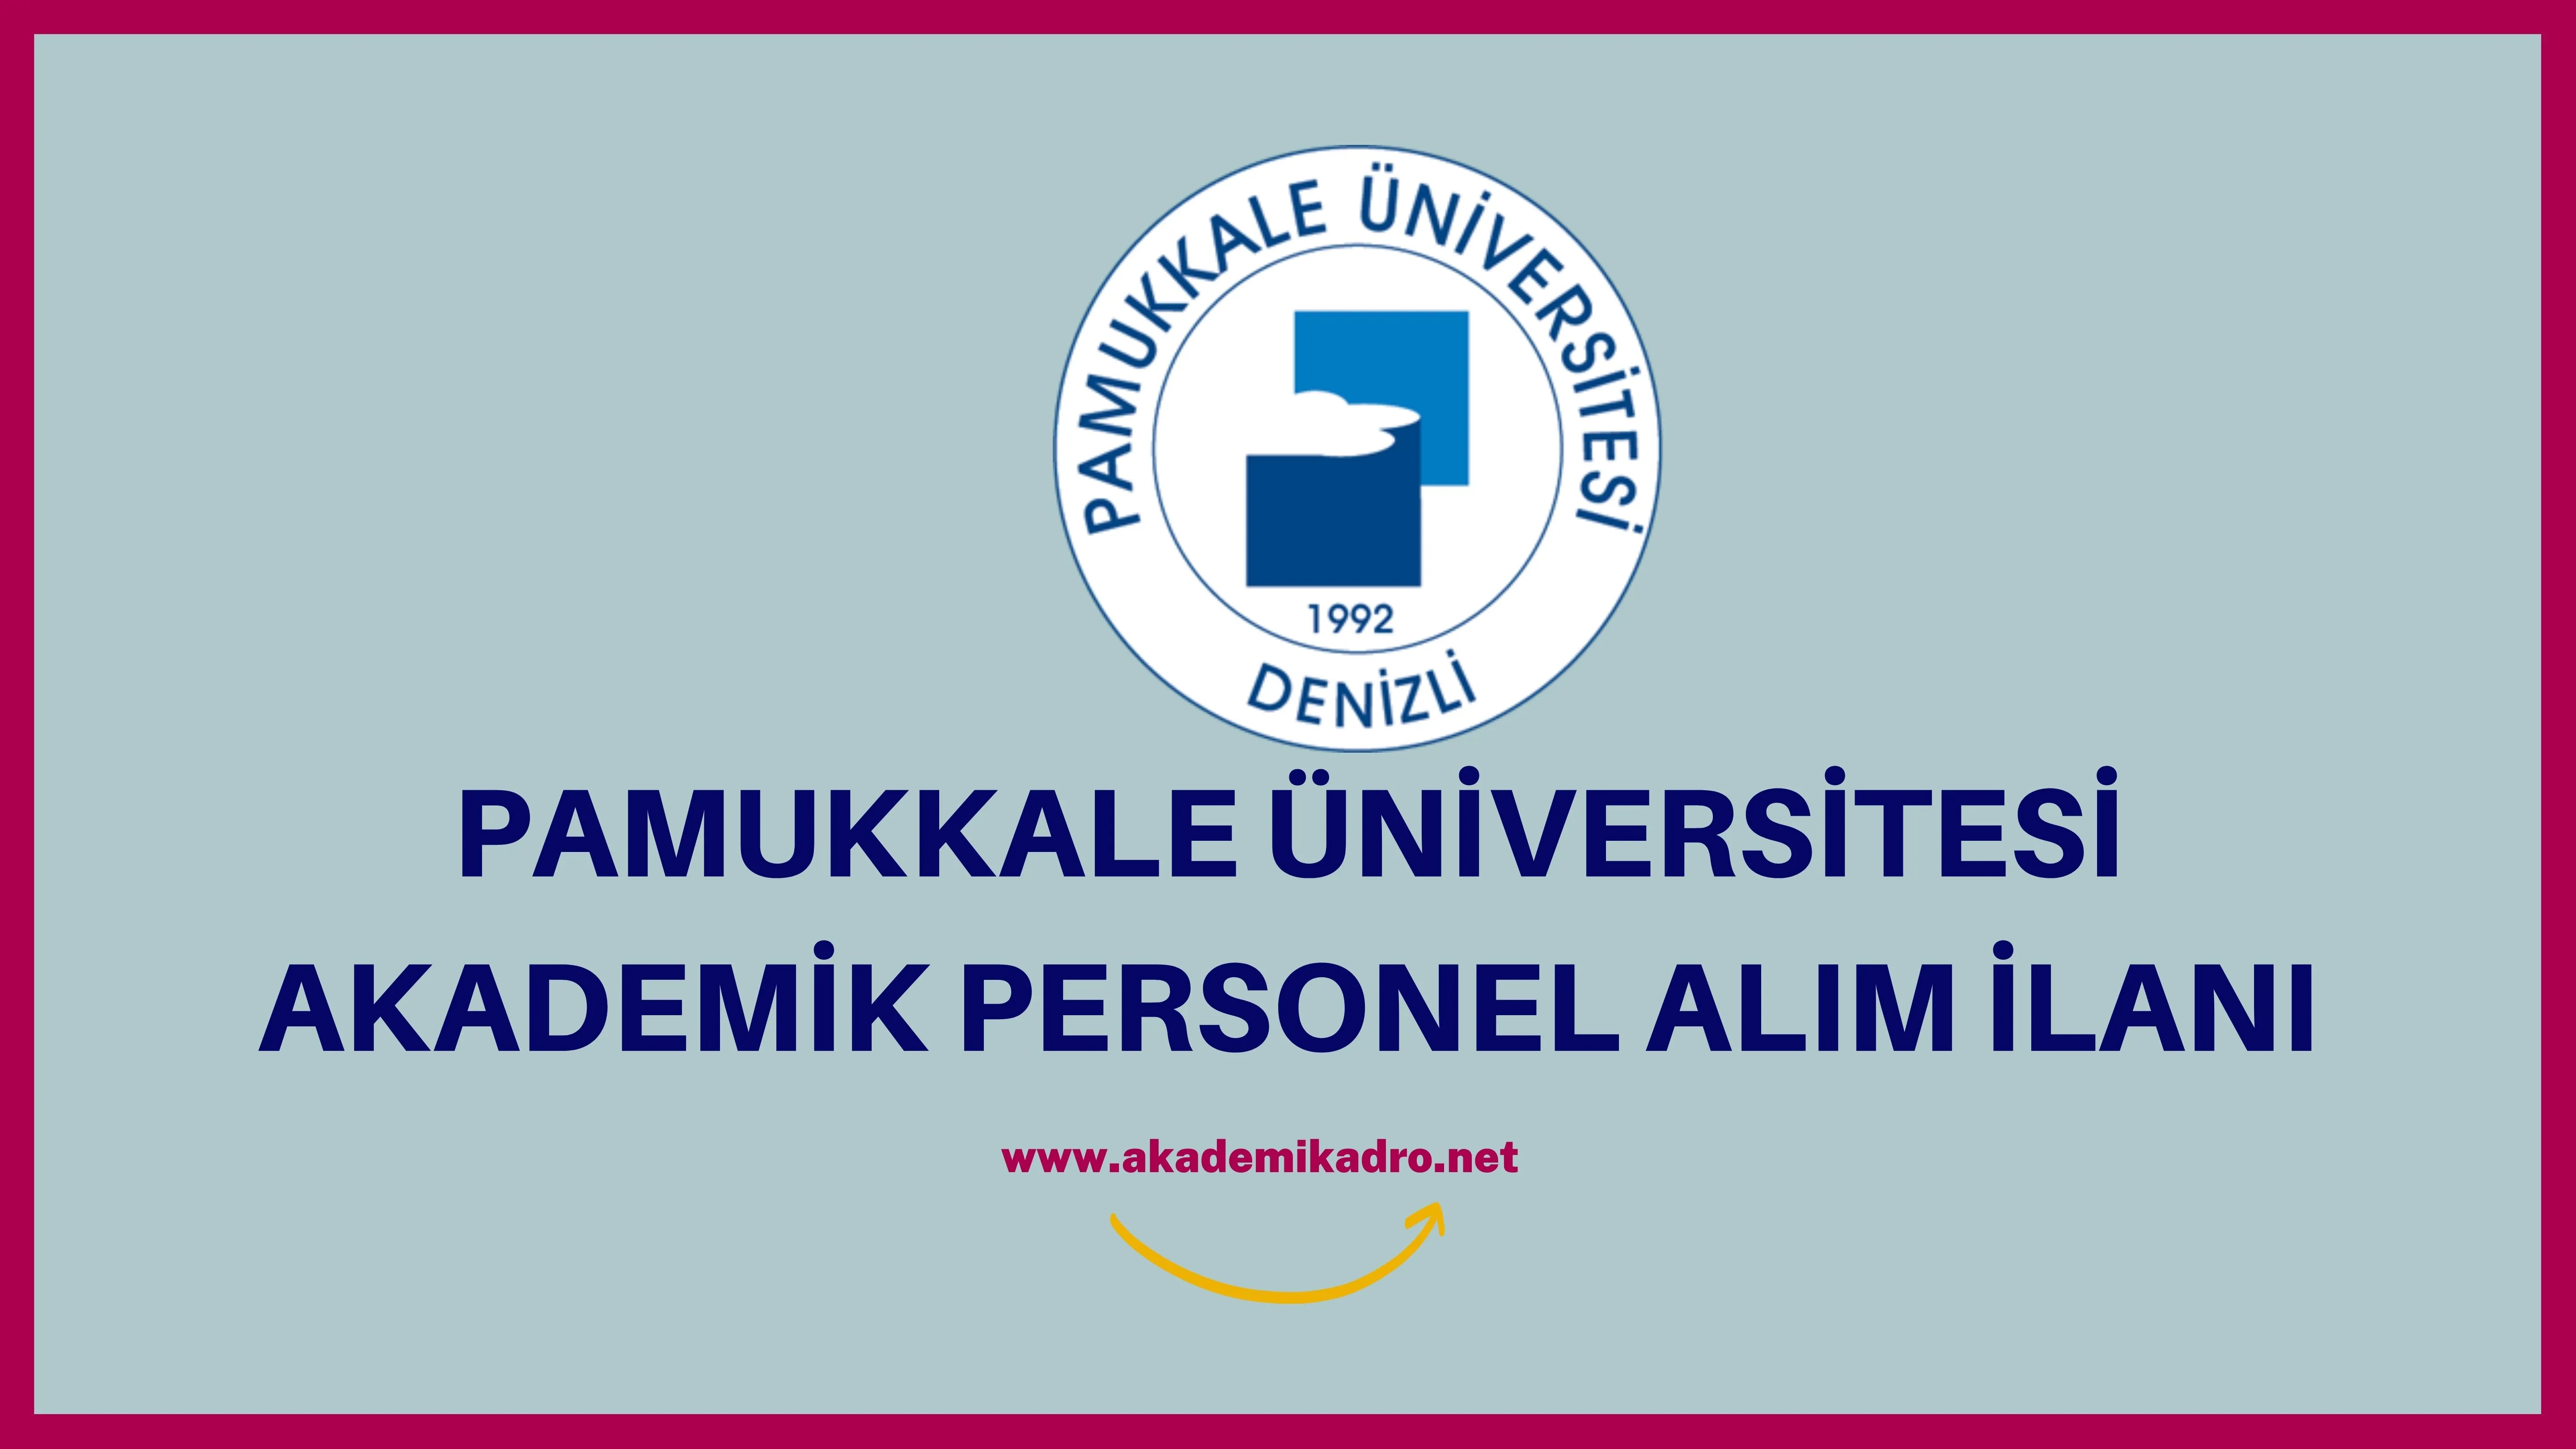 Pamukkale Üniversitesi birçok alandan 25 Akademik personel alacak.